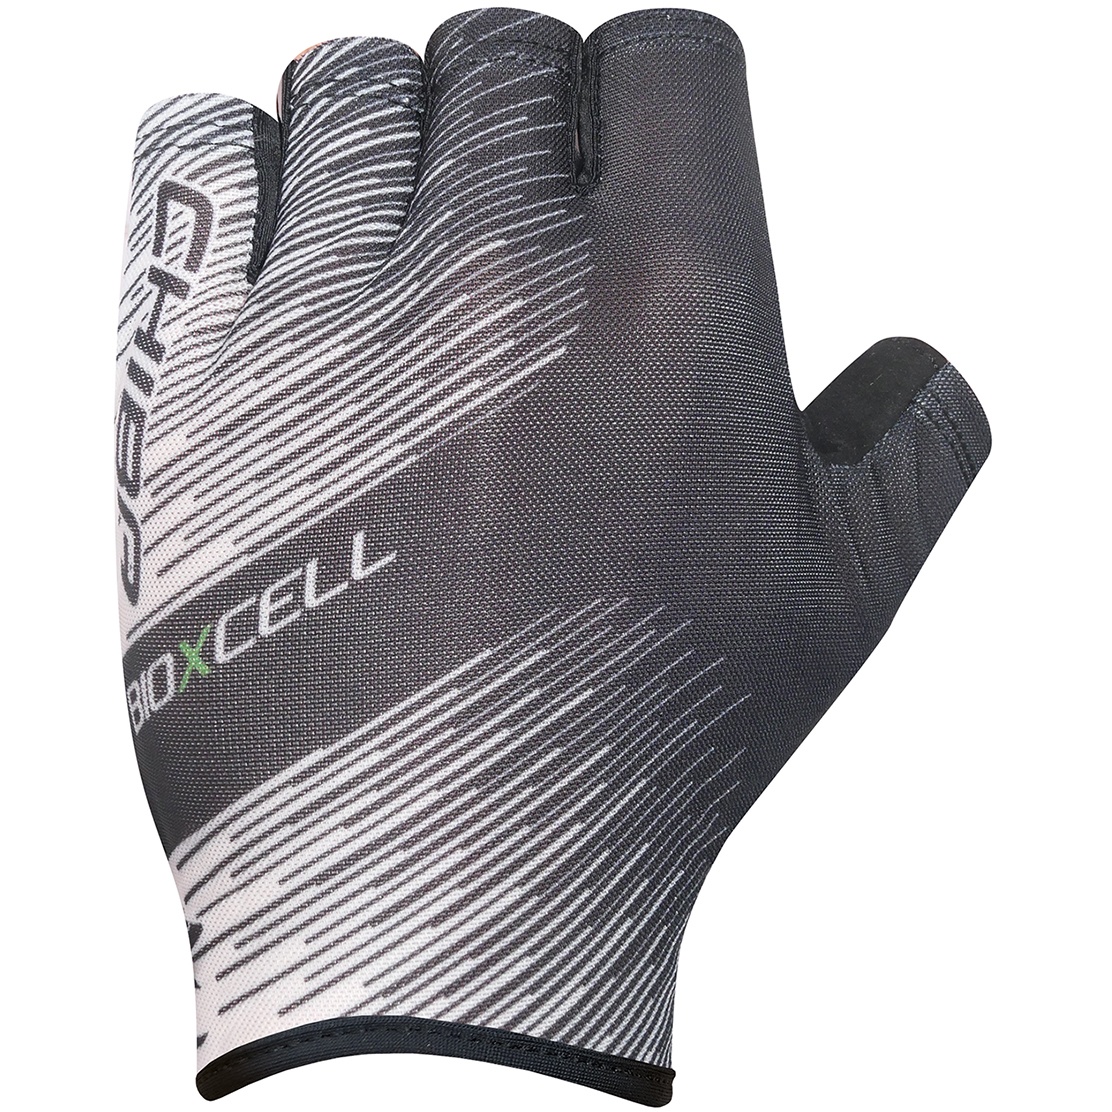 Produktbild von Chiba BioXCell Tan Through Kurzfinger-Handschuhe - weiß/schwarz